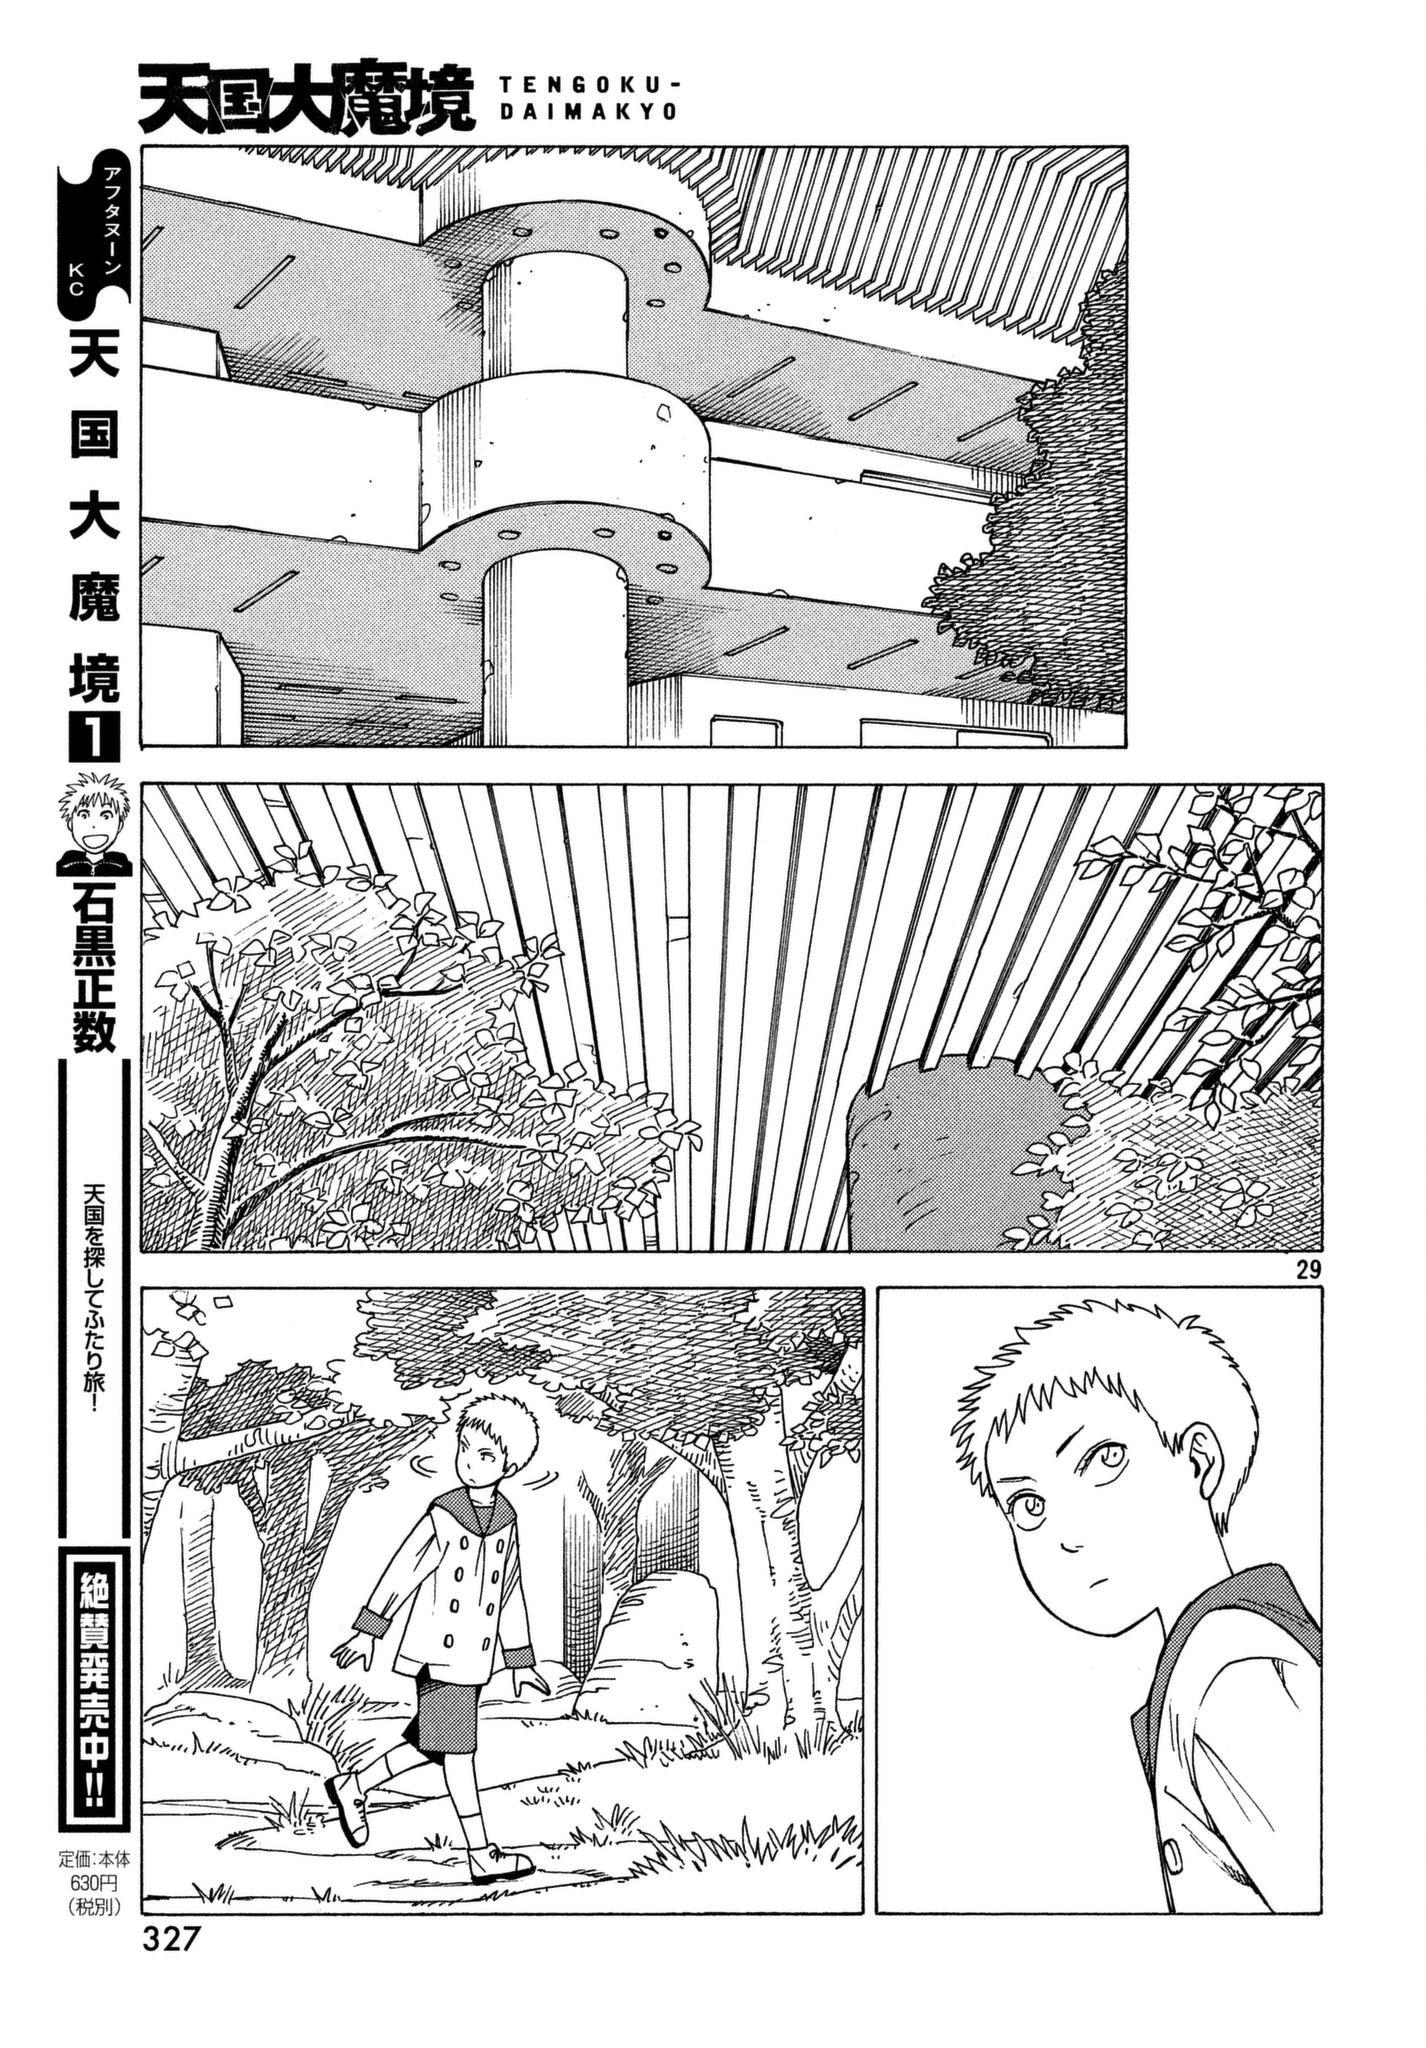 Tengoku Daimakyou Chapter 10: Kuku ① page 29 - Mangakakalot